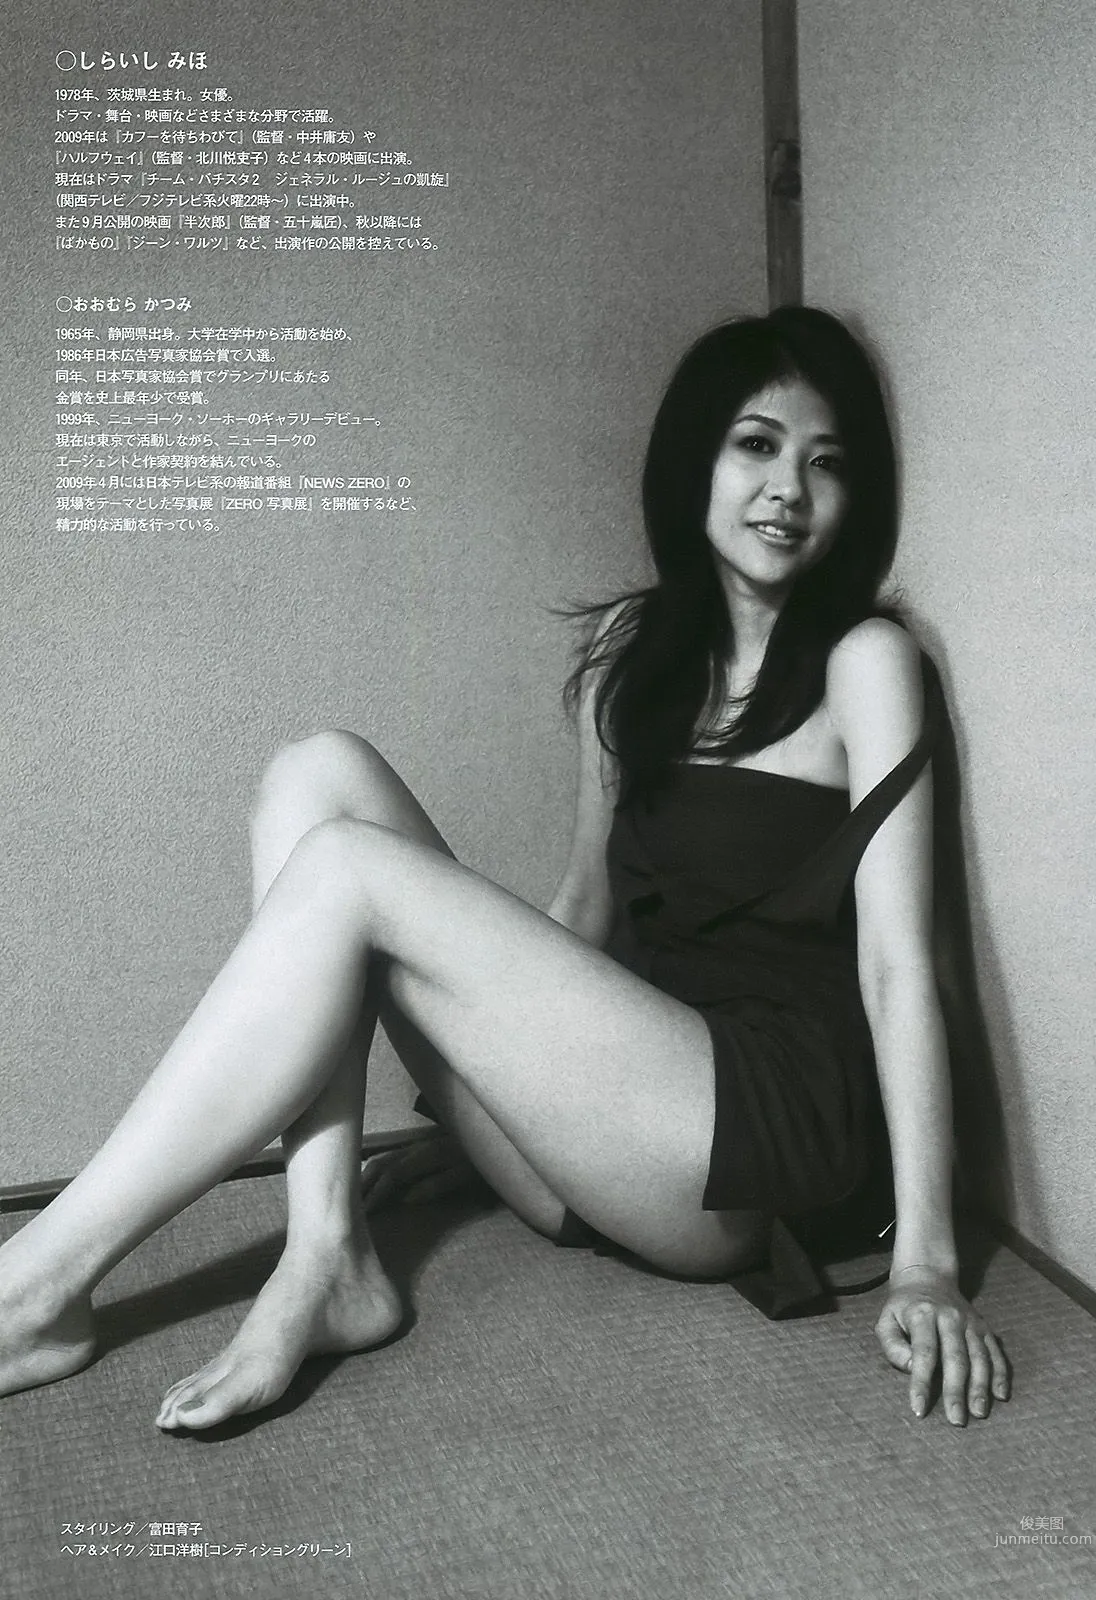 上戸彩 逢沢りな 甲斐まり恵 AKB48 白石美帆 後藤理沙 [Weekly Playboy] 2010年No.19-20 写真杂志28